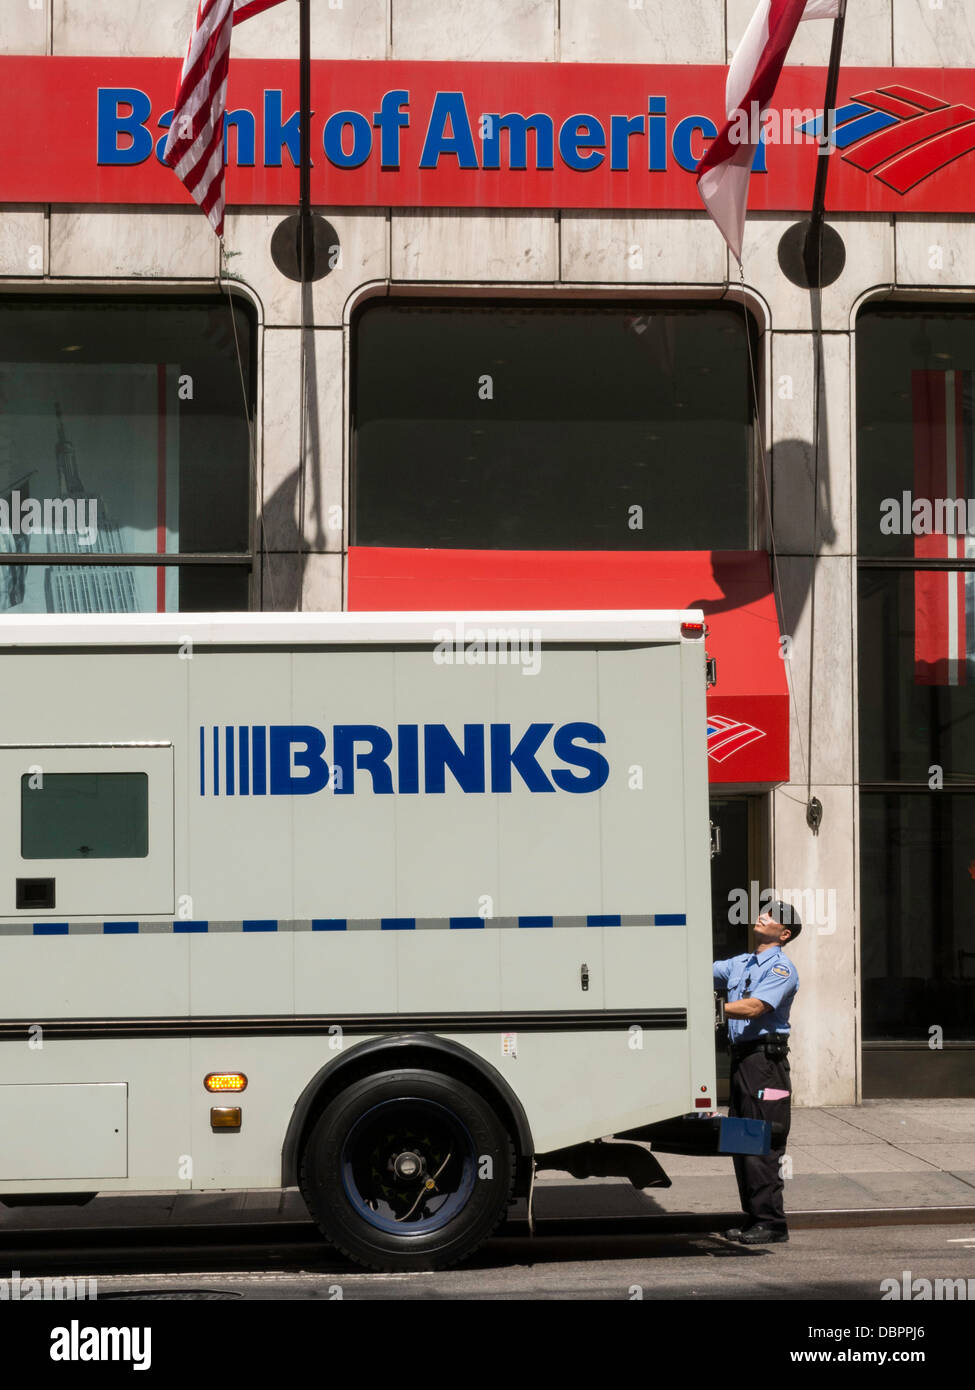 Brinks Carrello blindato e la protezione al di fuori di Bank of America Branch, NYC, STATI UNITI D'AMERICA Foto Stock